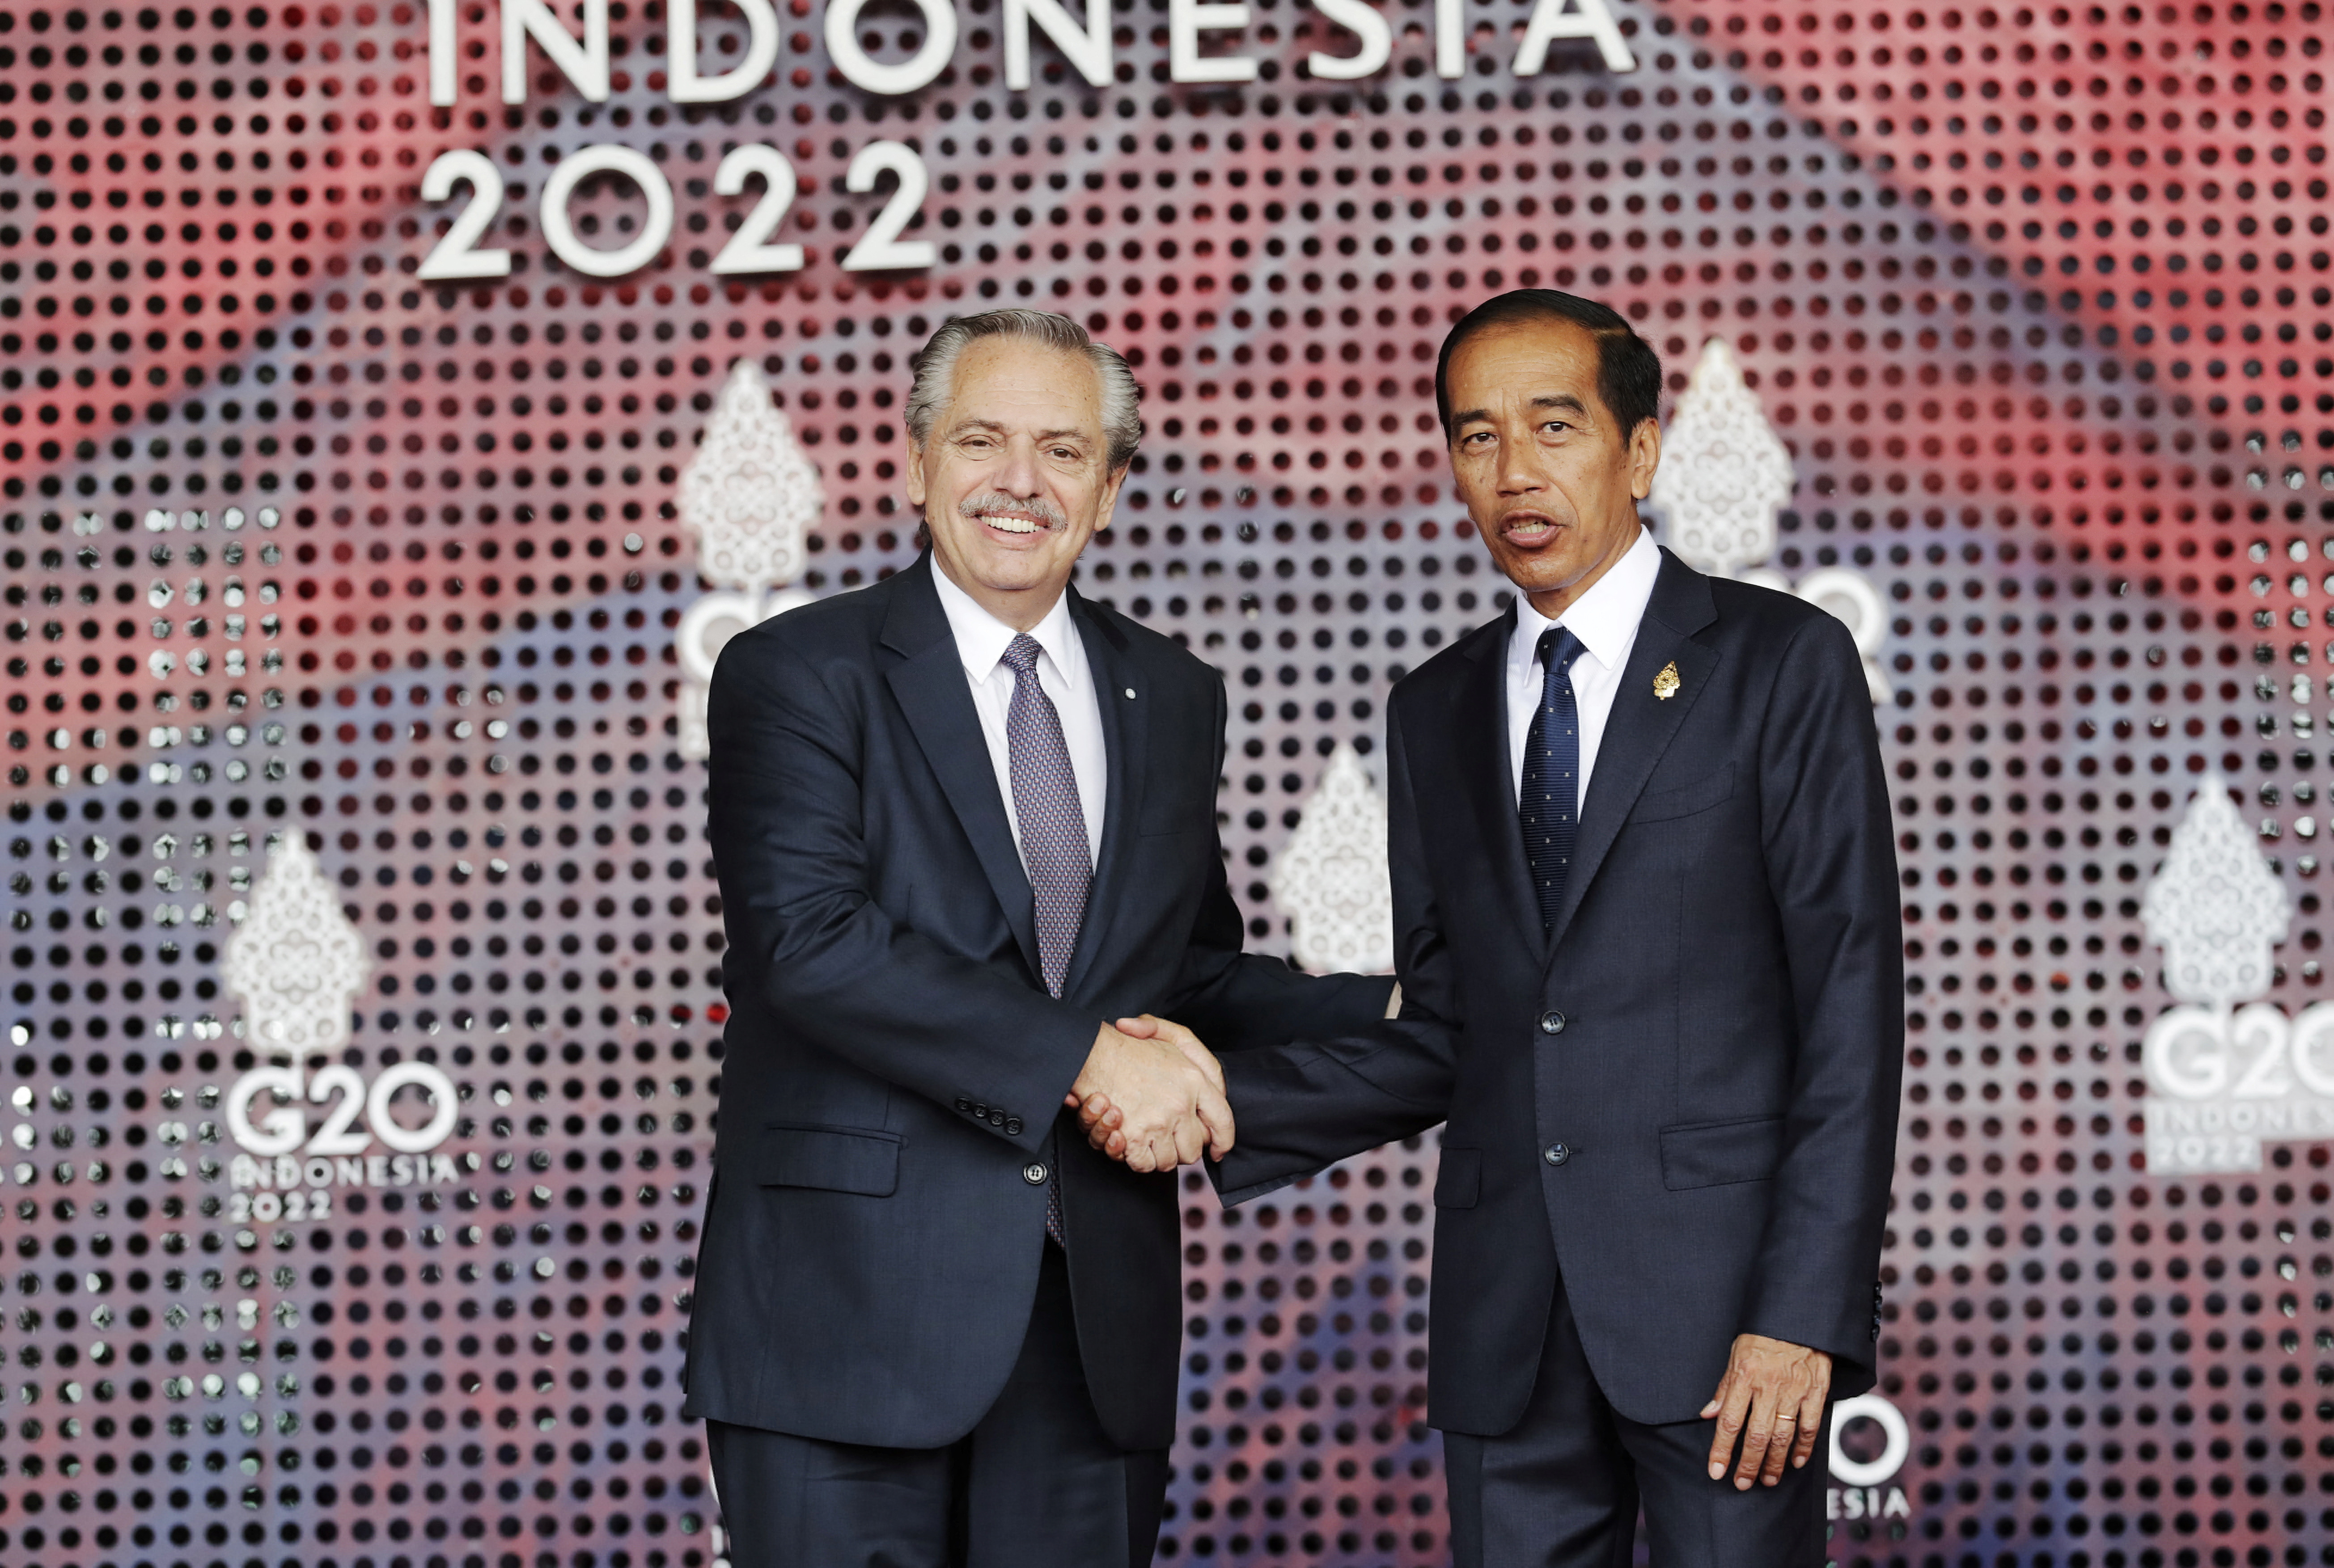 El presidente de Indonesia, Joko Widodo, recibe a Alberto Fernandez antes del comienzo de la cumbre del G20 